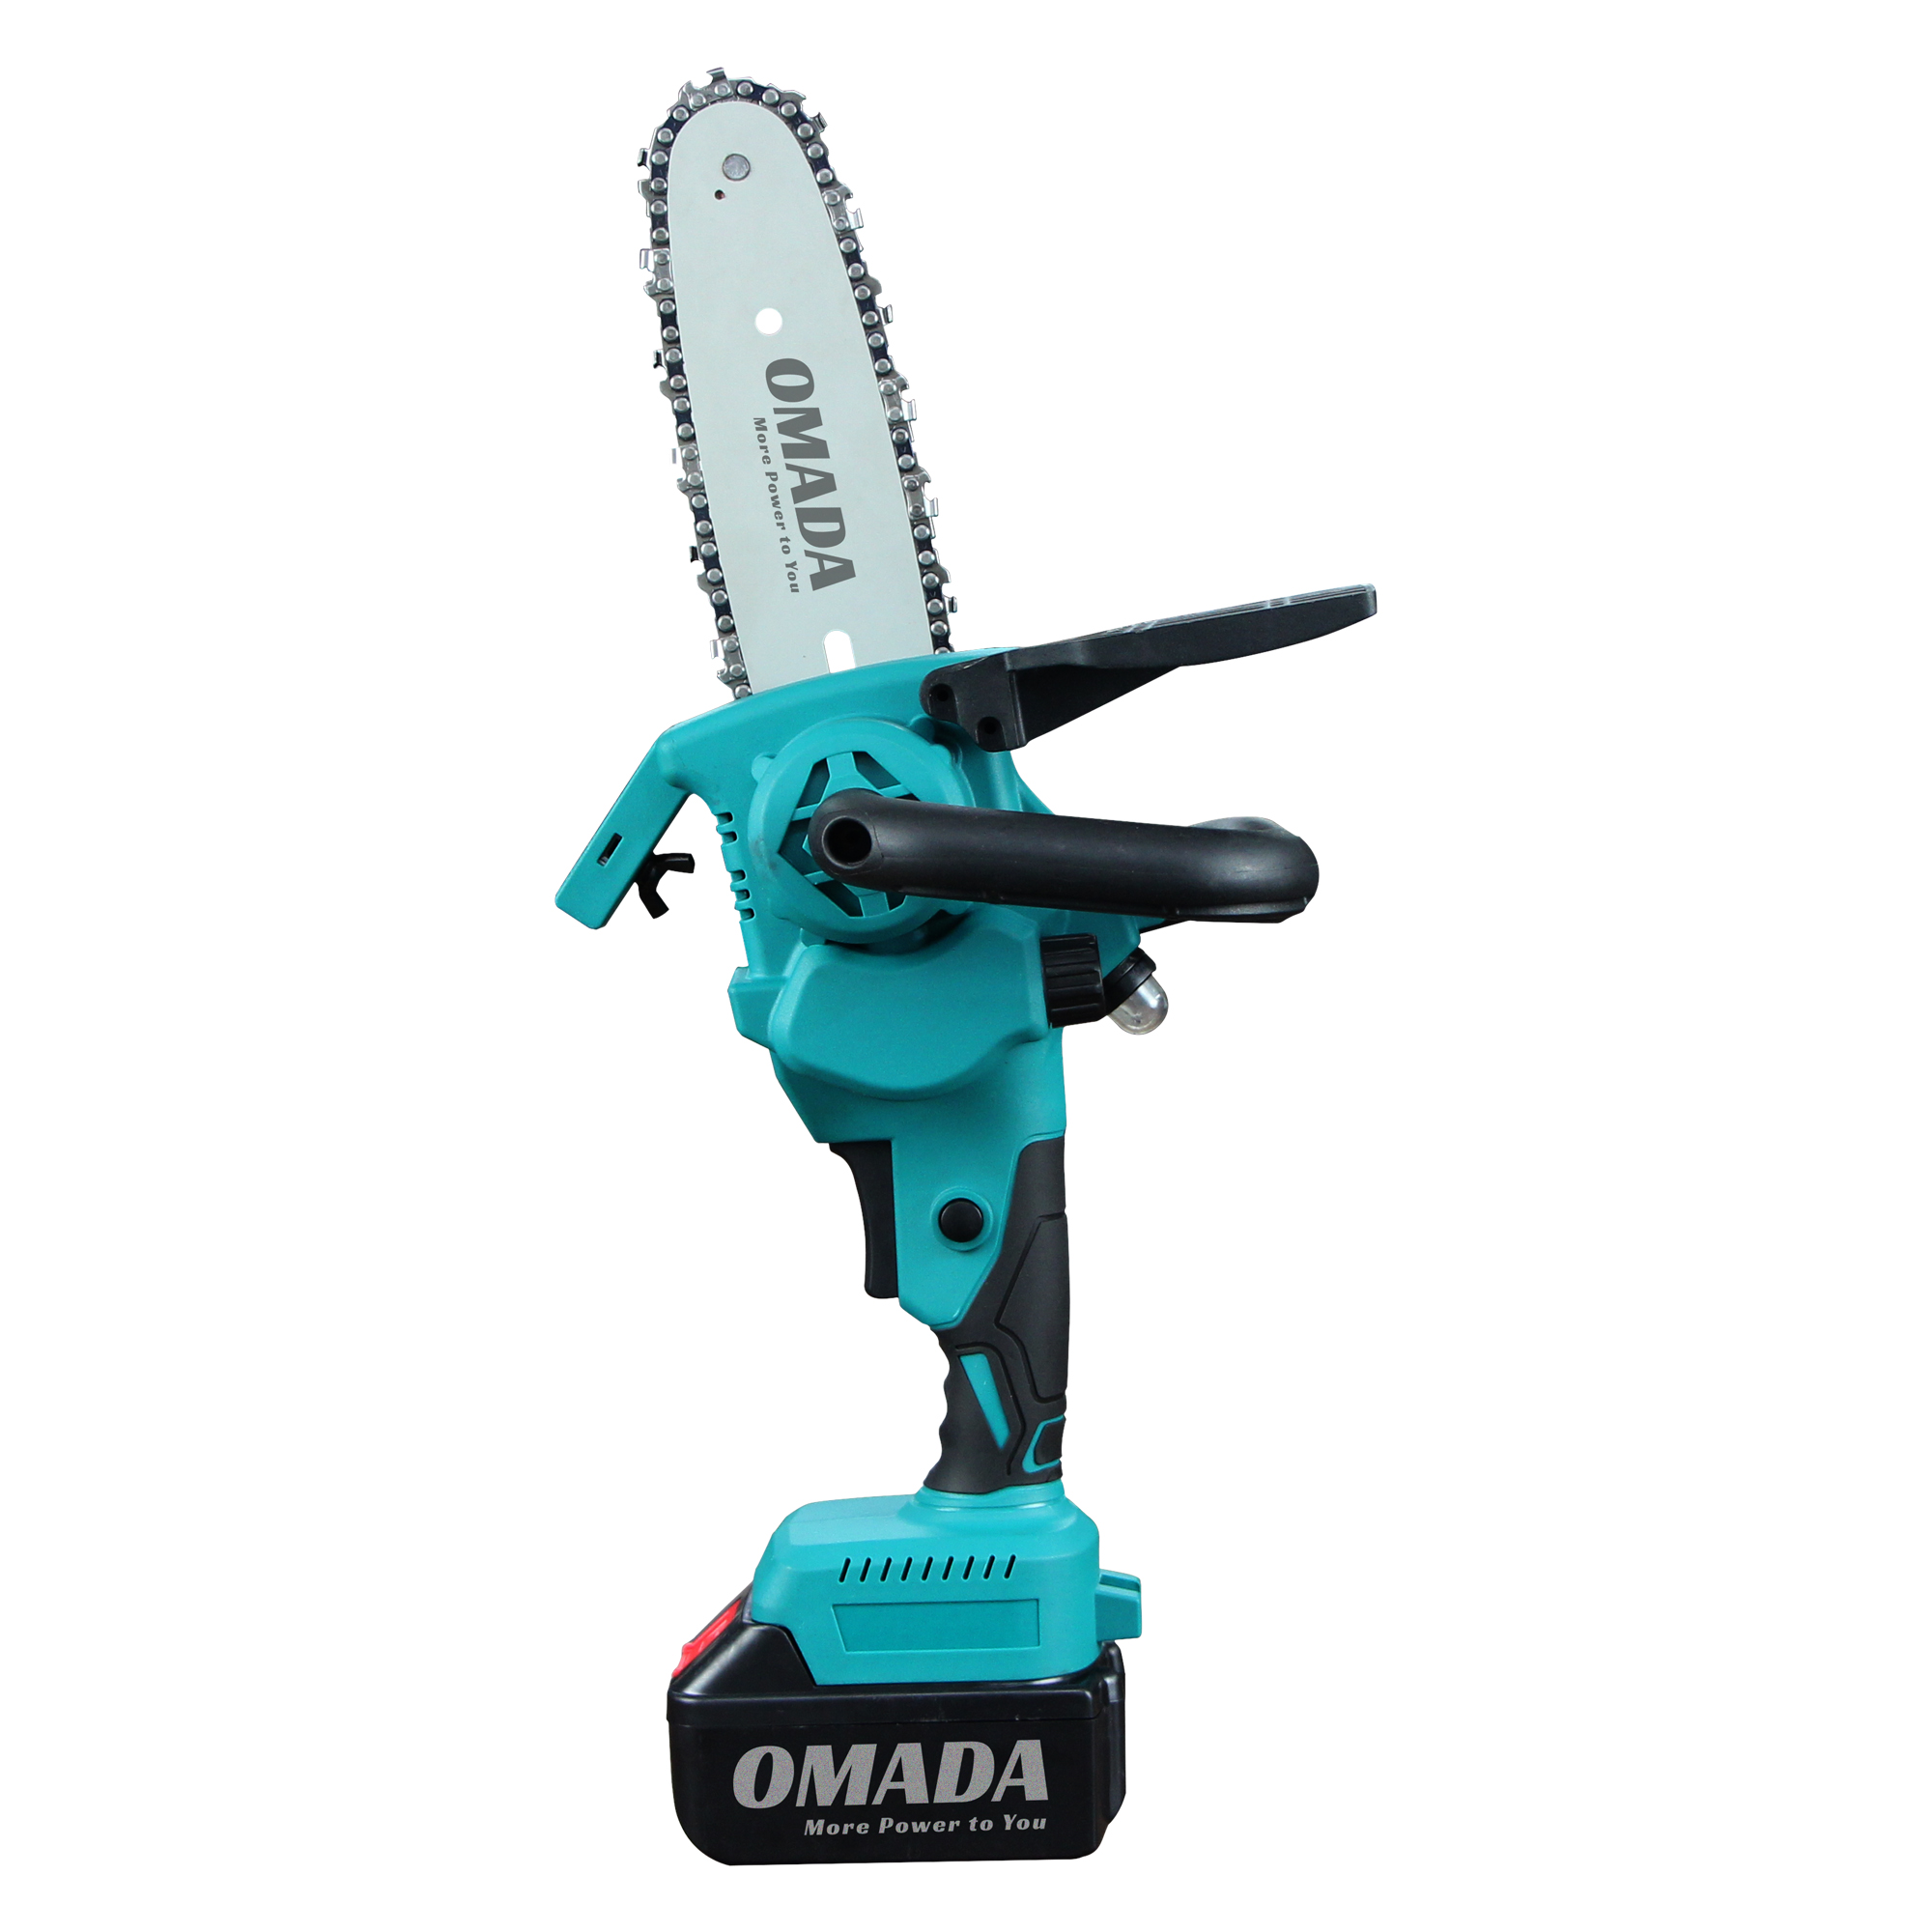 Omada 6-Inch Wood Cutting Tools, Wood Cutter Saw